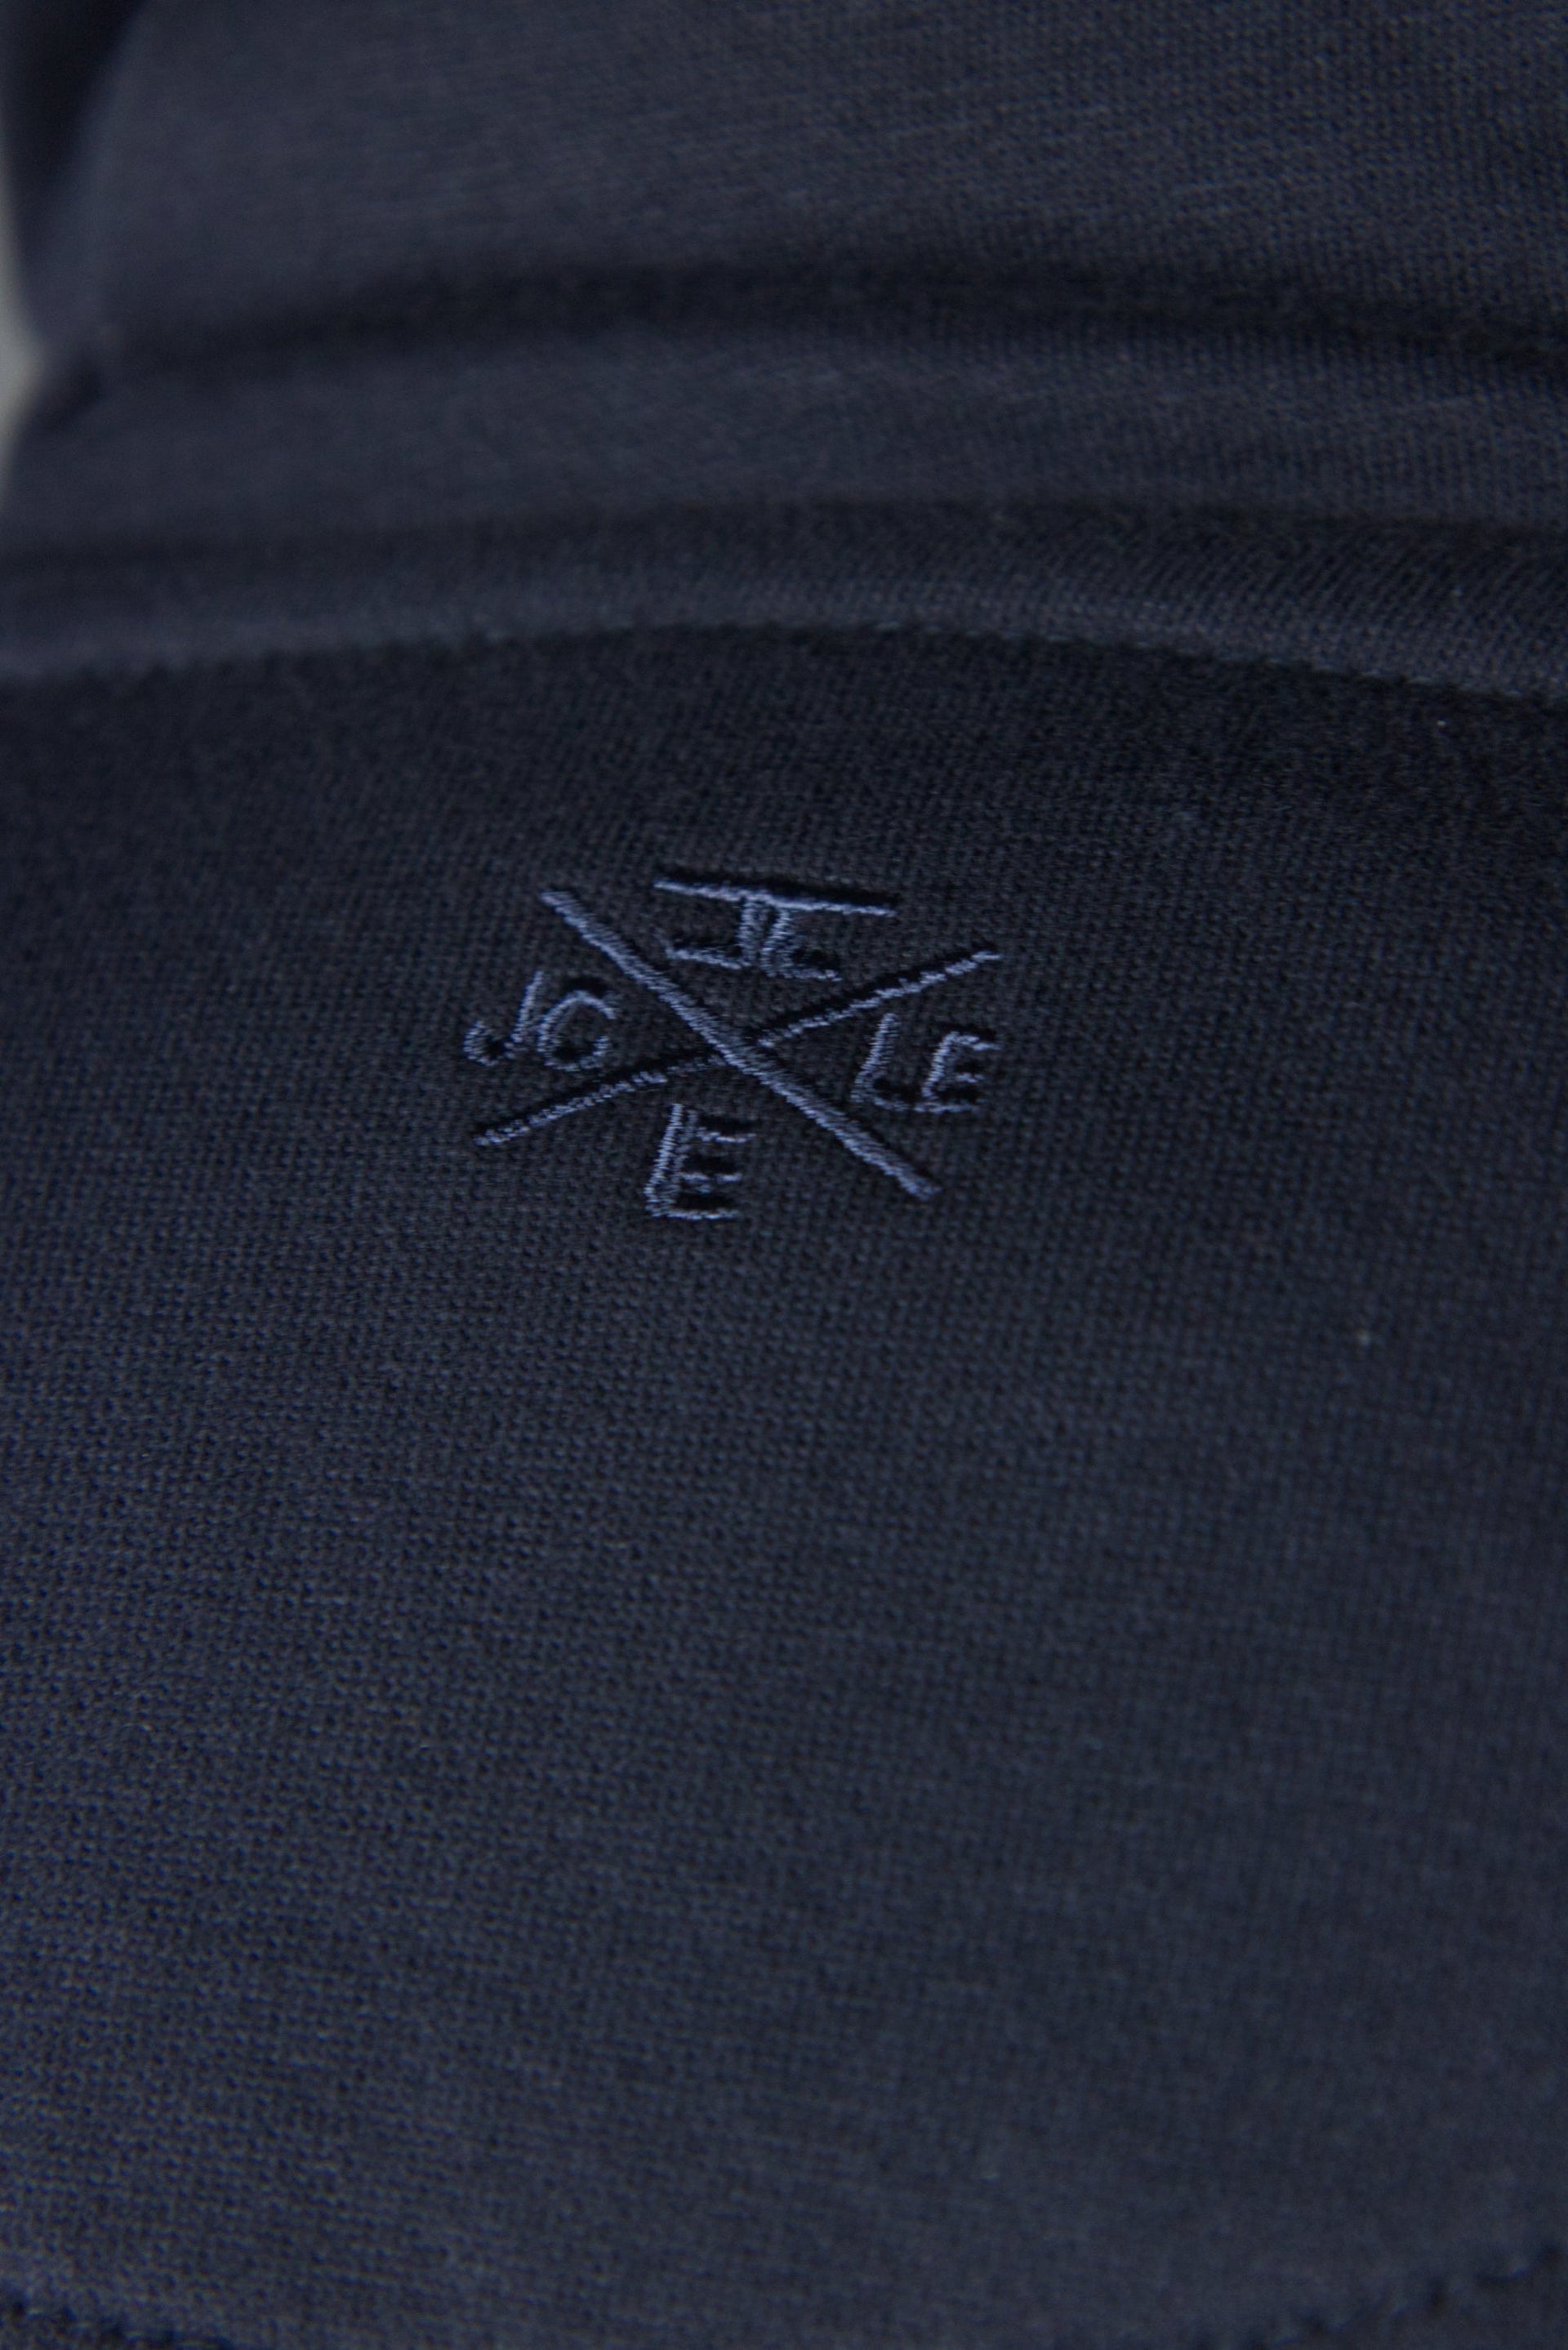 The logo of Jordan Craig on the back side of the Jordan Craig navy blue hoodie.